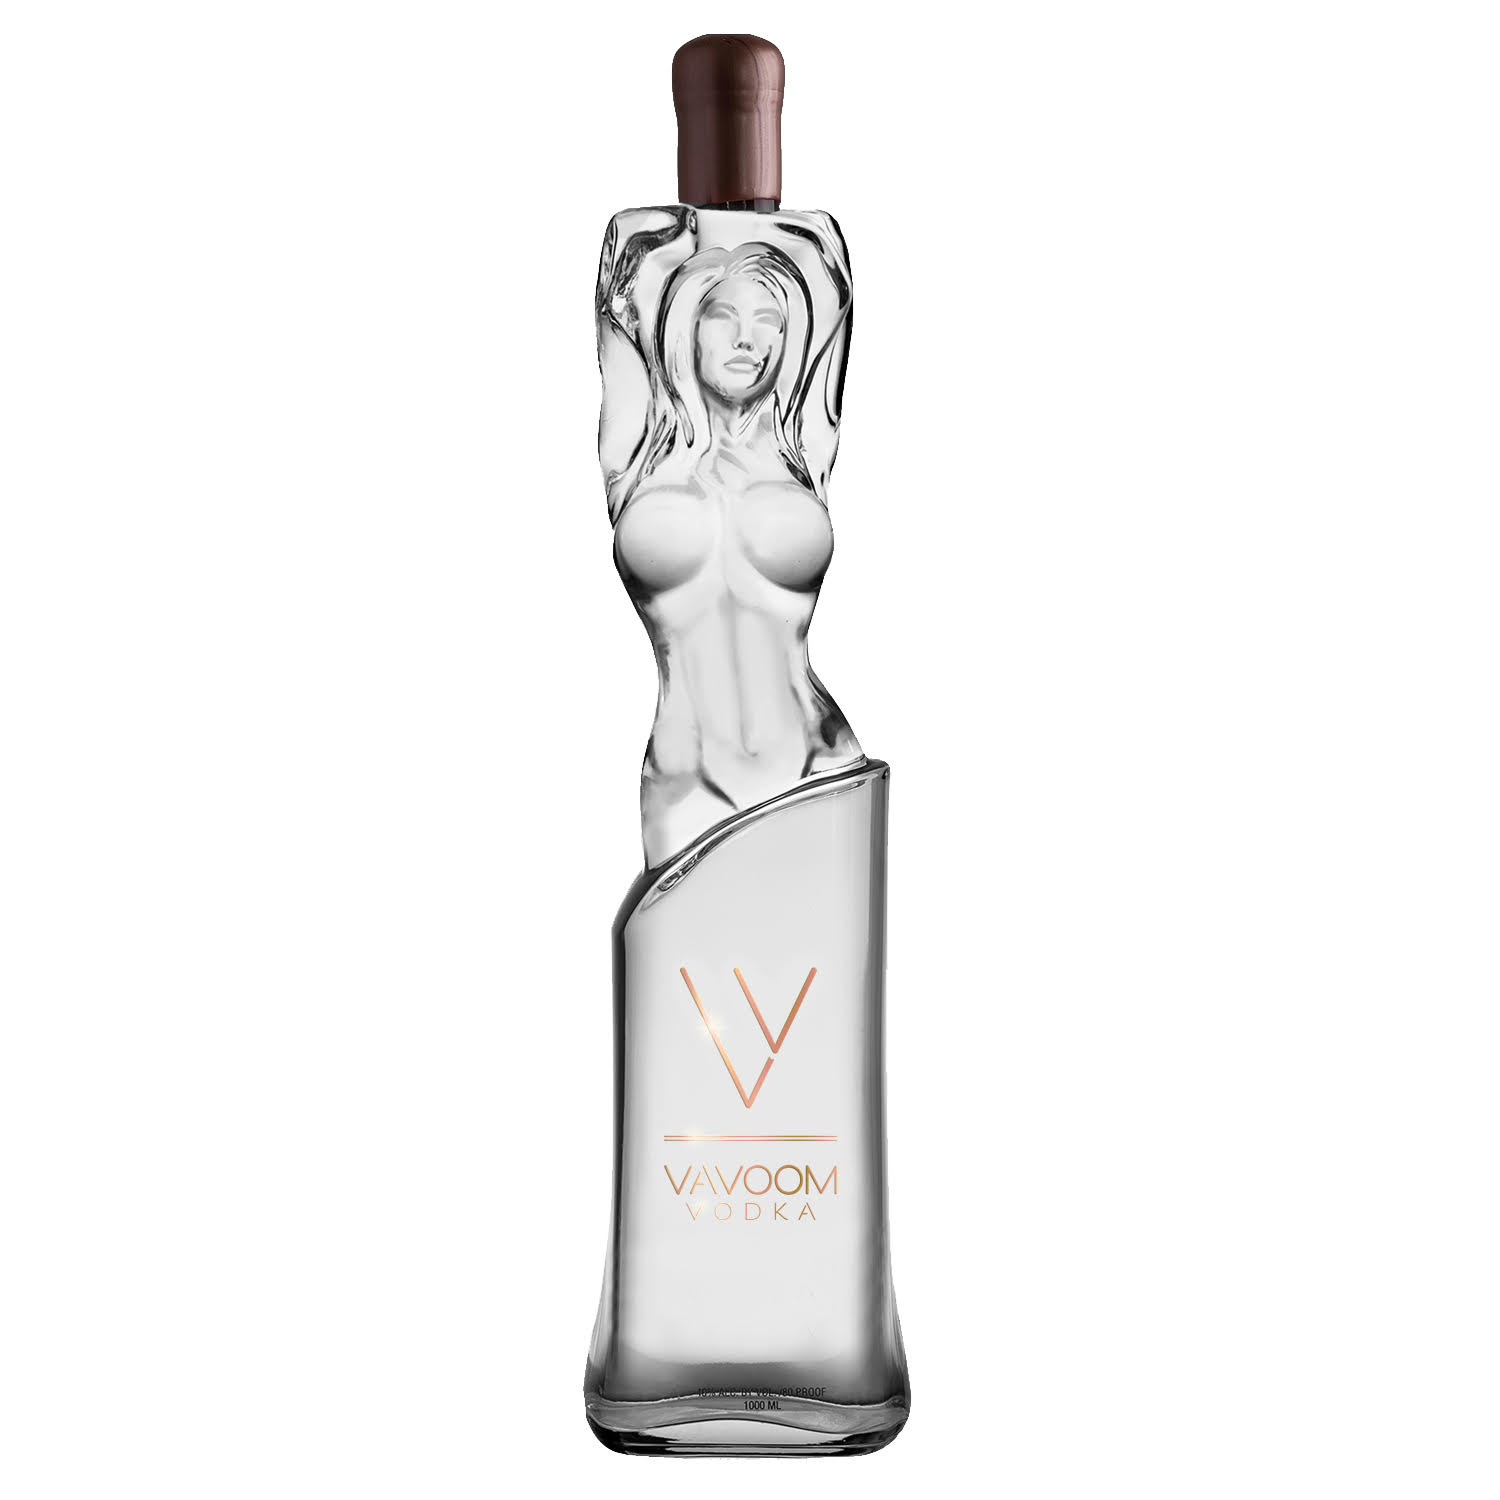 Vavoom Vodka Bottle – Brittany Bearden